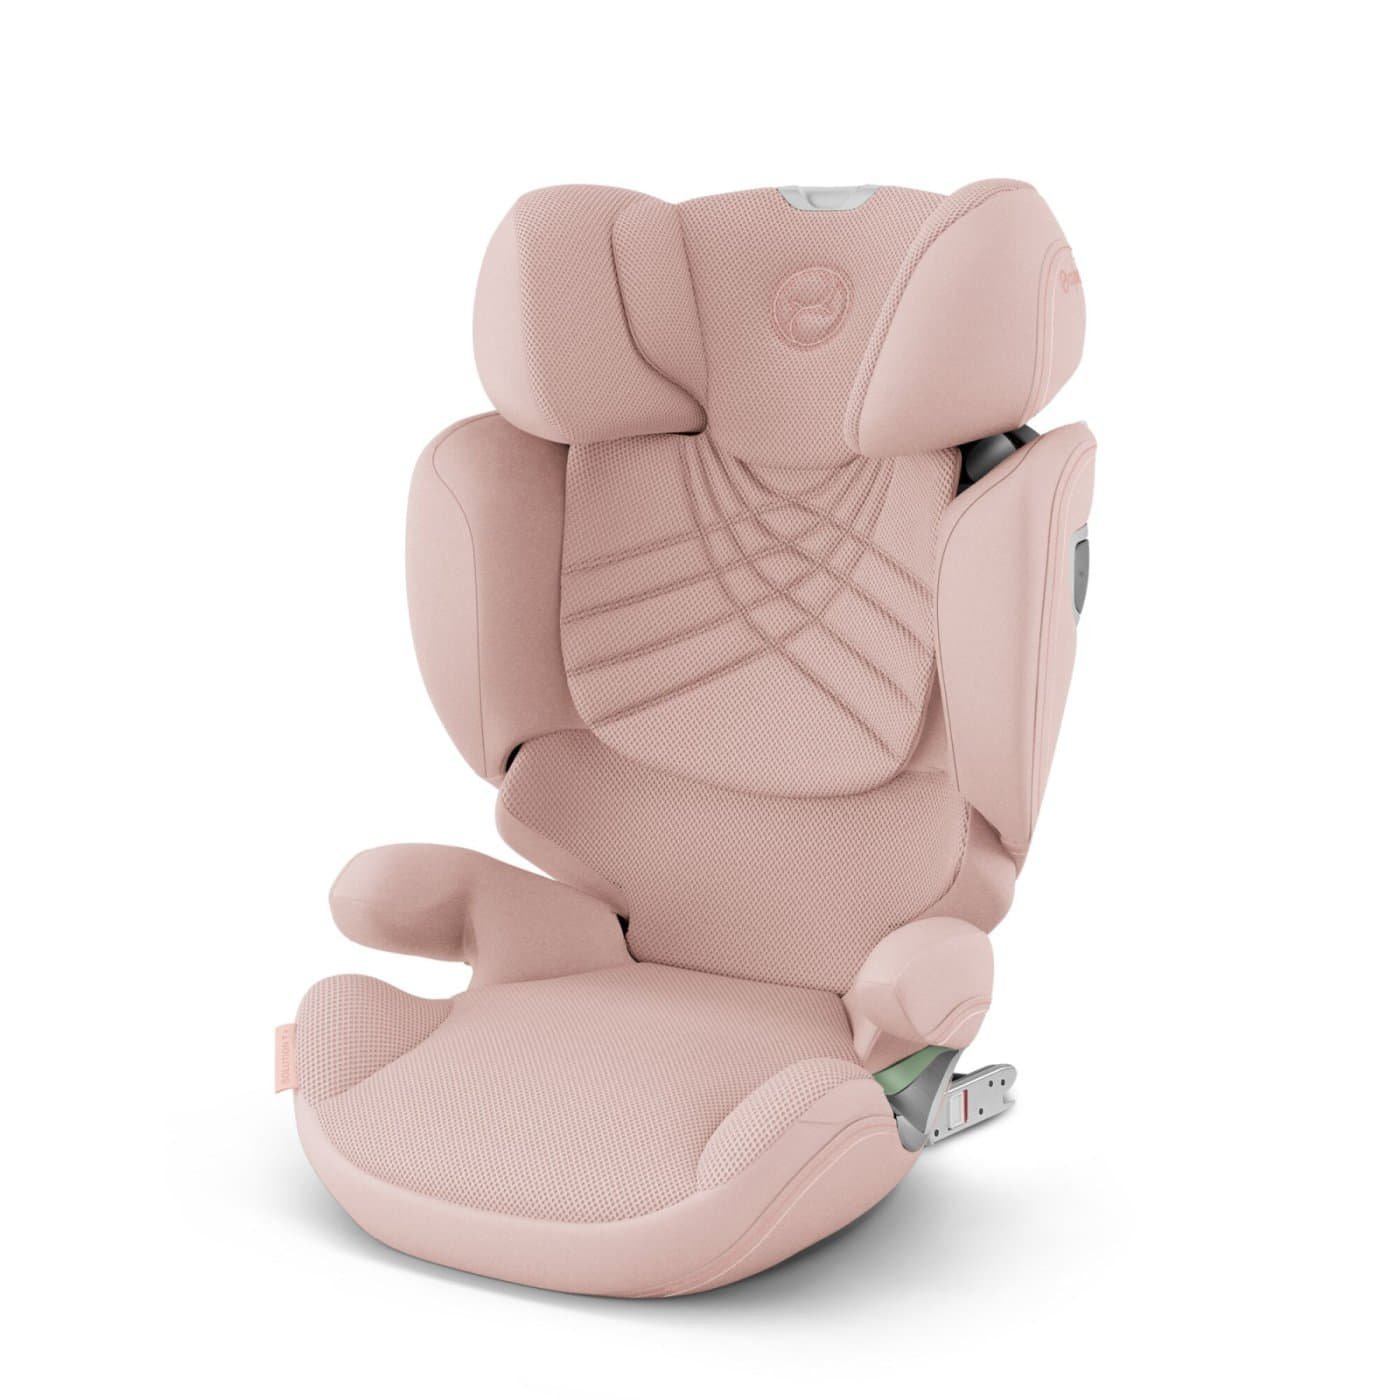 Cadou pentru fetite de 3 ani - idei practice- scaun auto copii roz-min